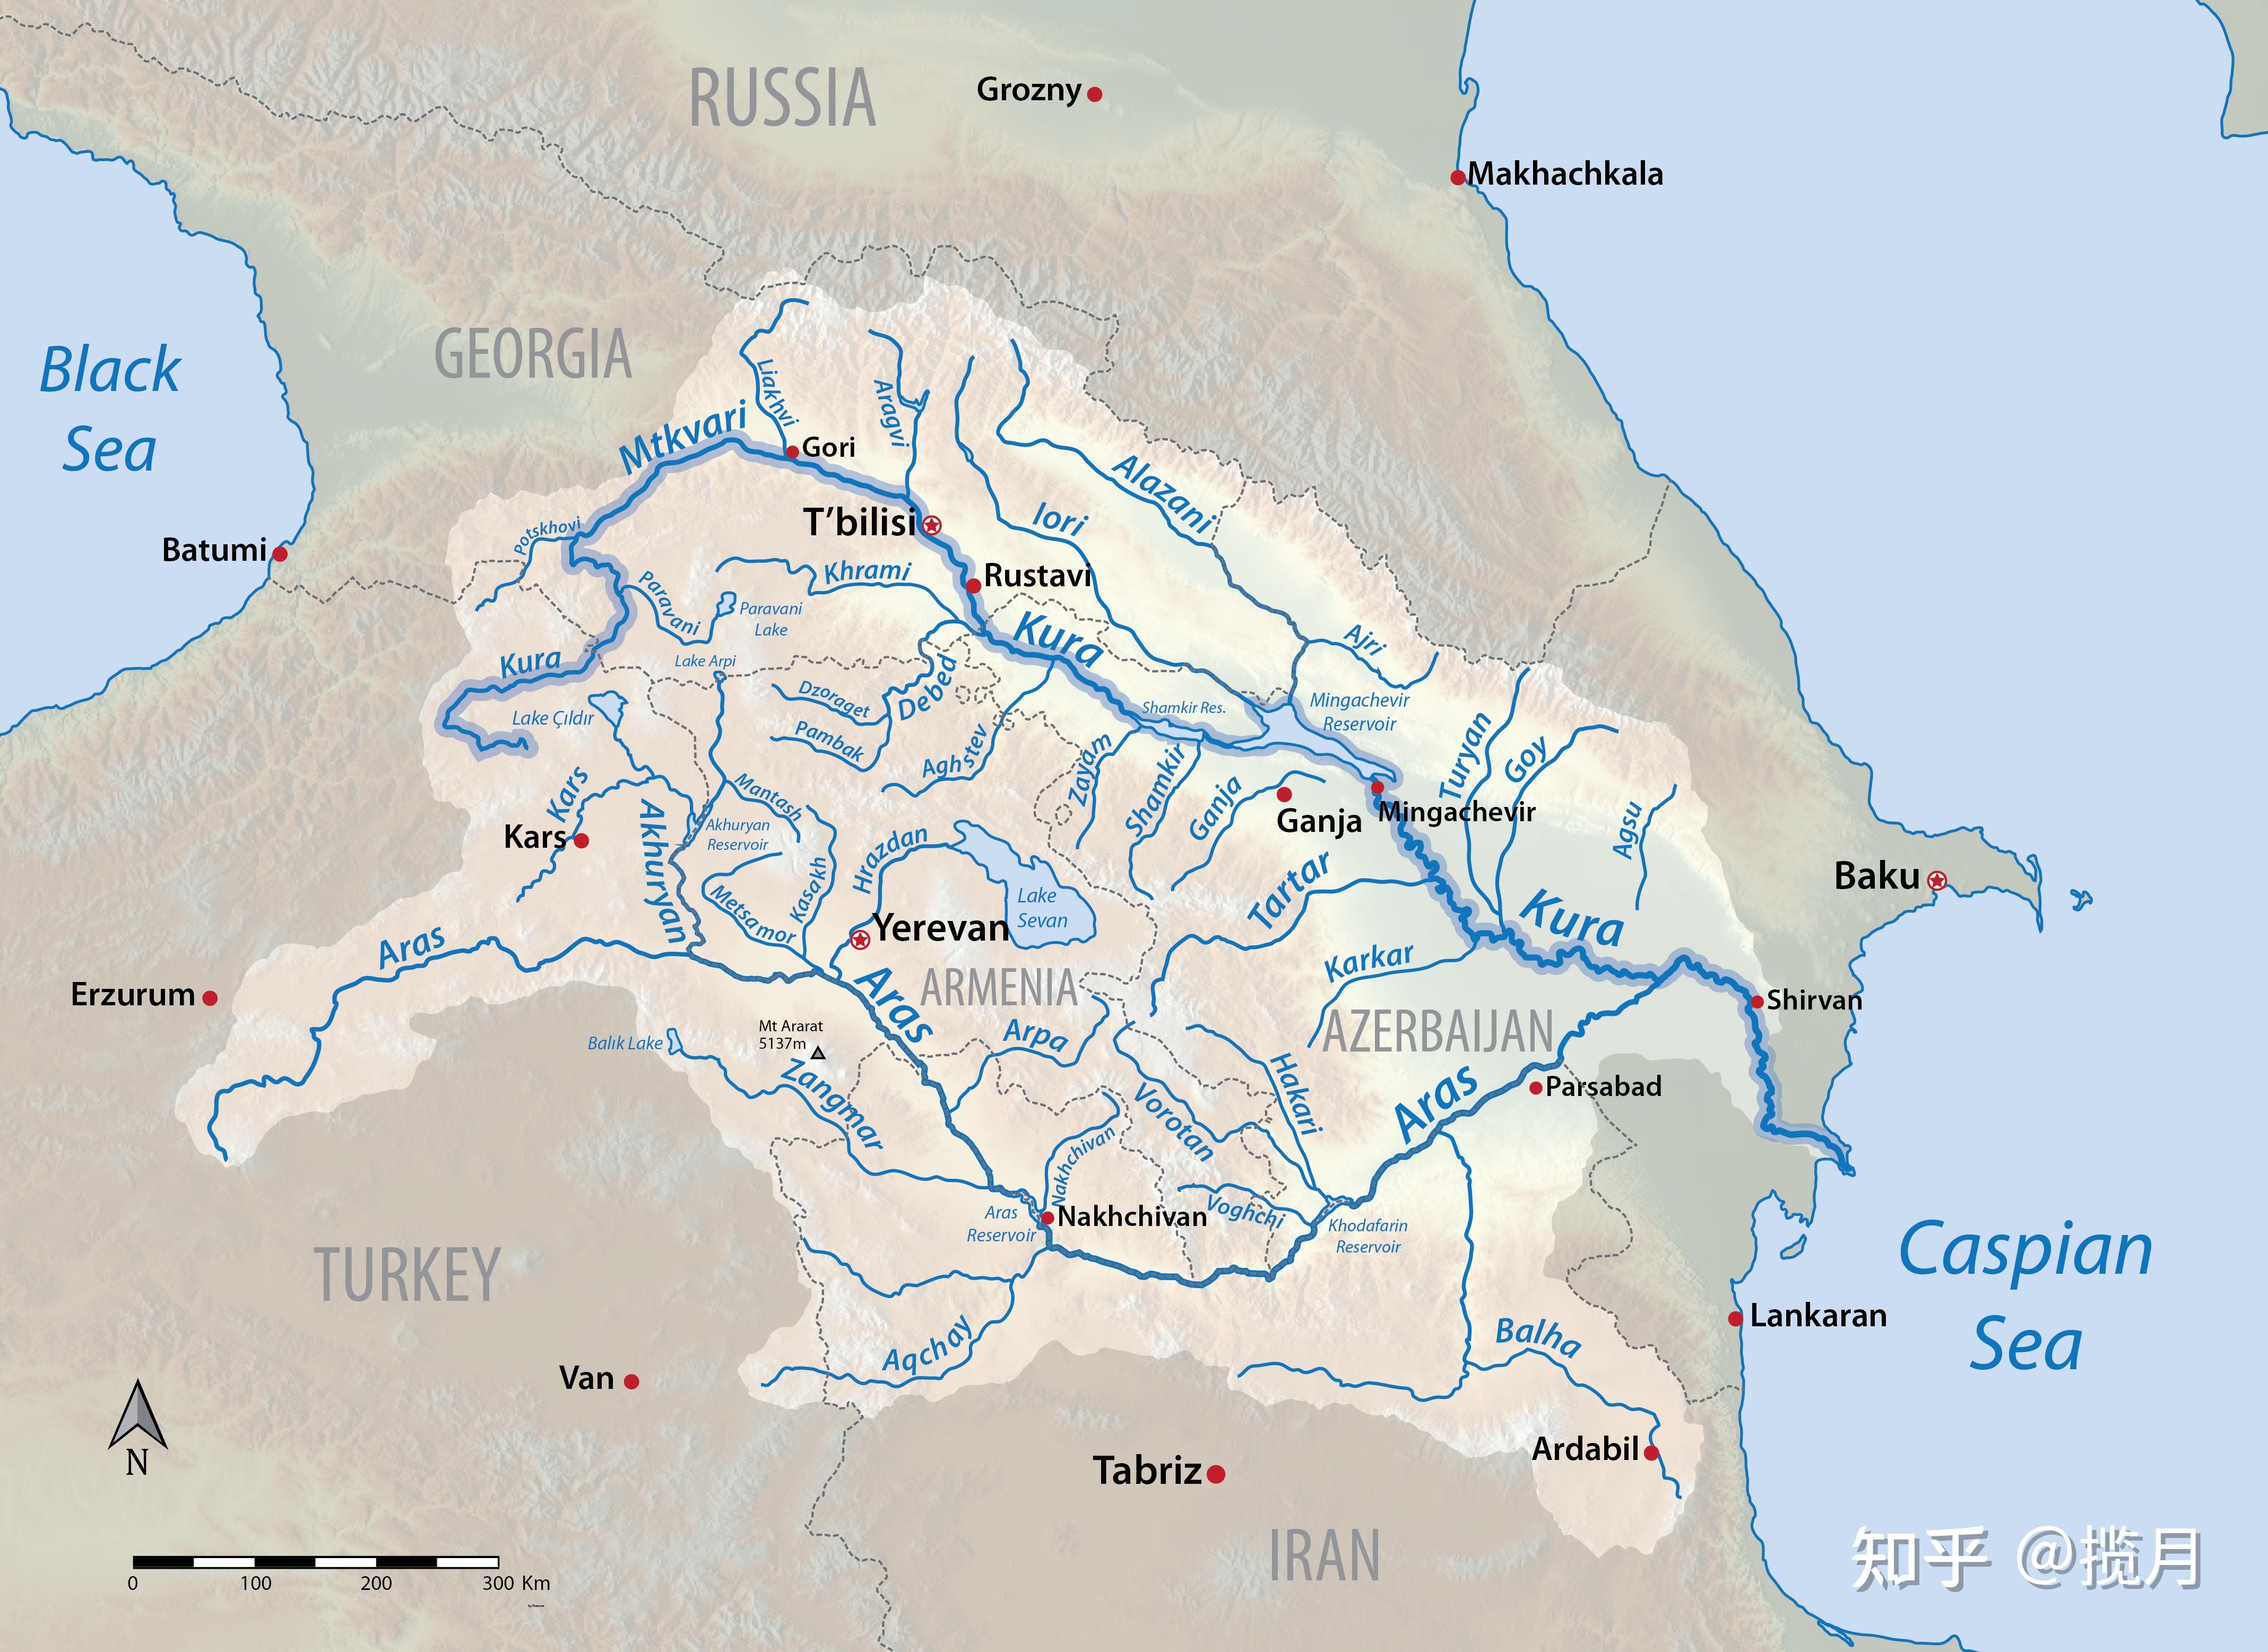 湄南河乌克兰,罗马尼亚,摩尔多瓦60.德涅斯特河(3国)完全属于美国59.